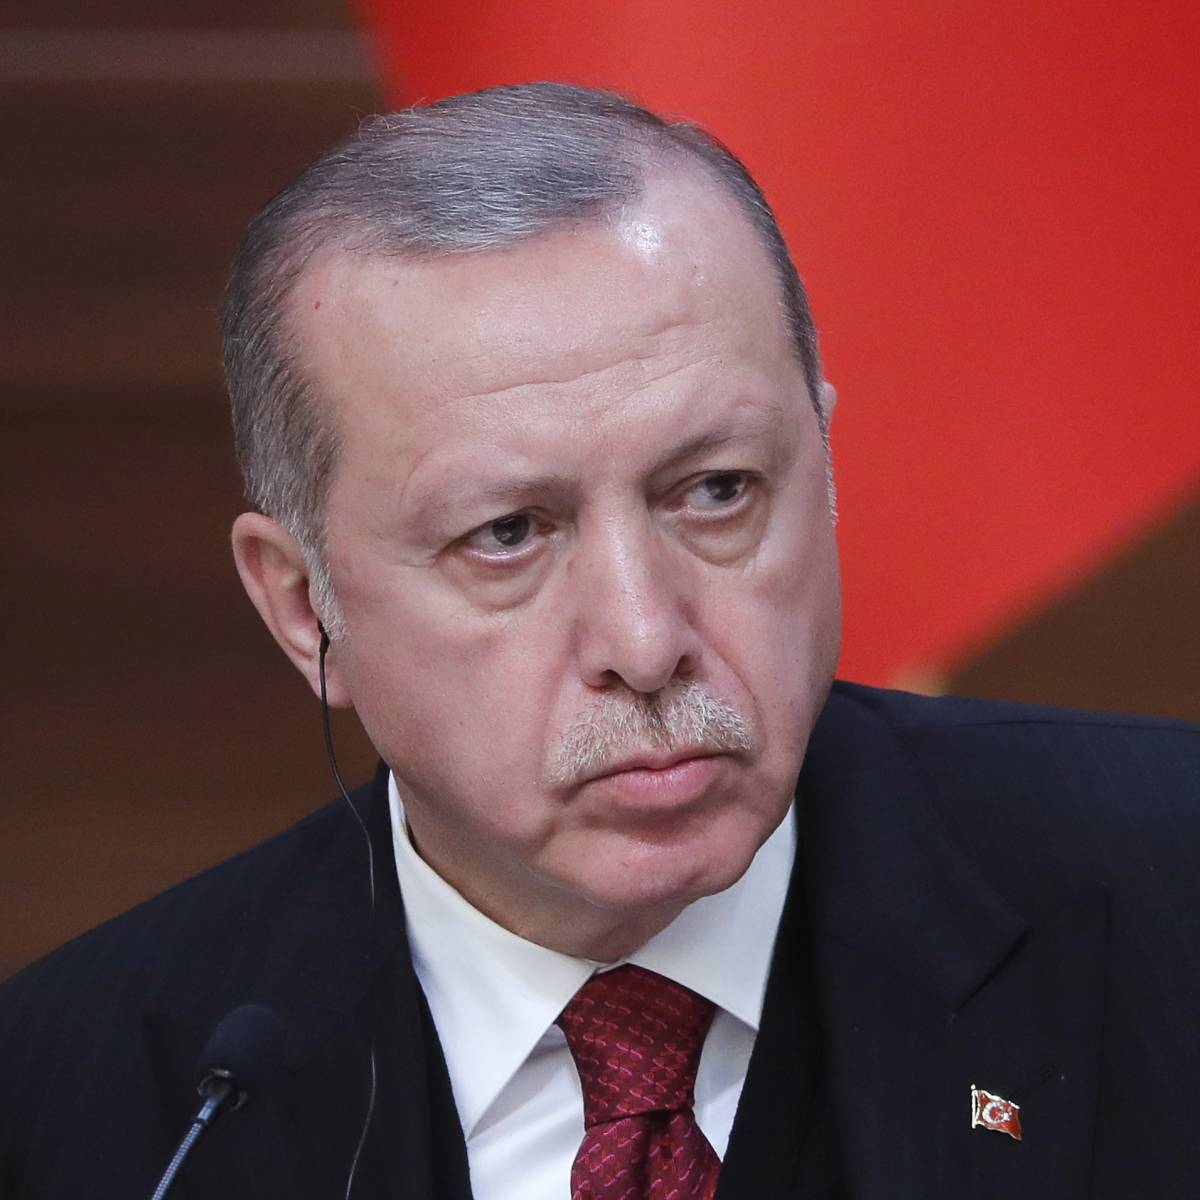 Жертва Эрдогана. Как президенту Турции вернуть доверие инвесторов